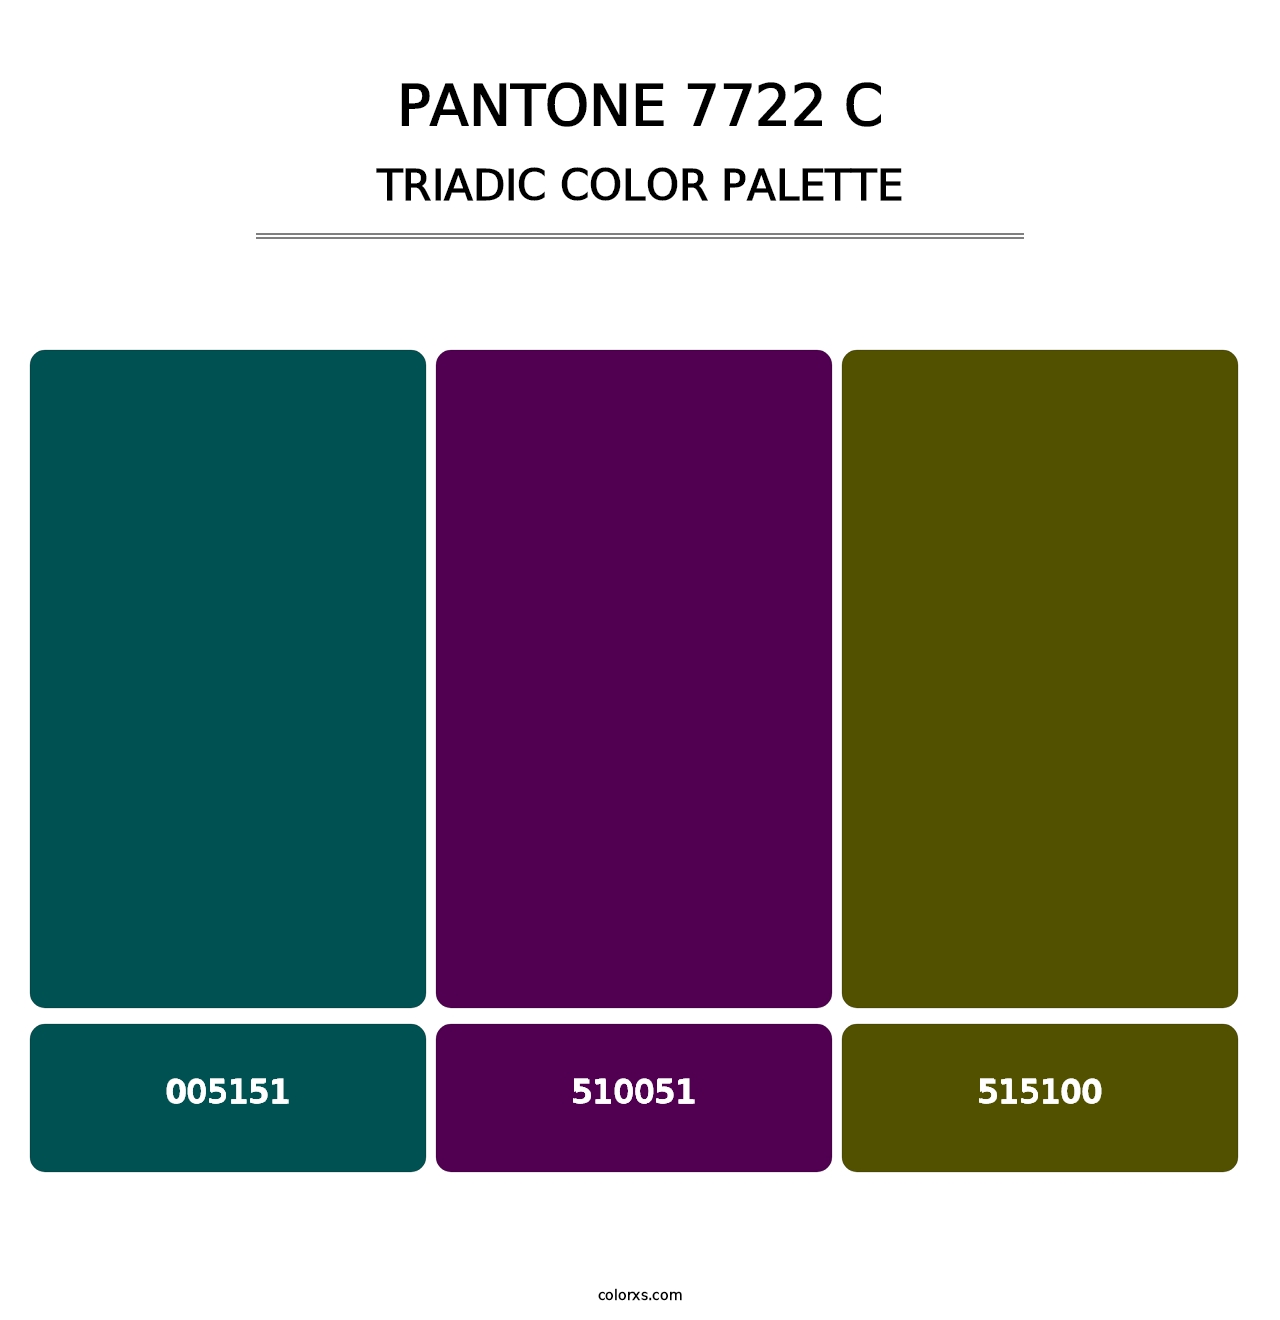 PANTONE 7722 C - Triadic Color Palette